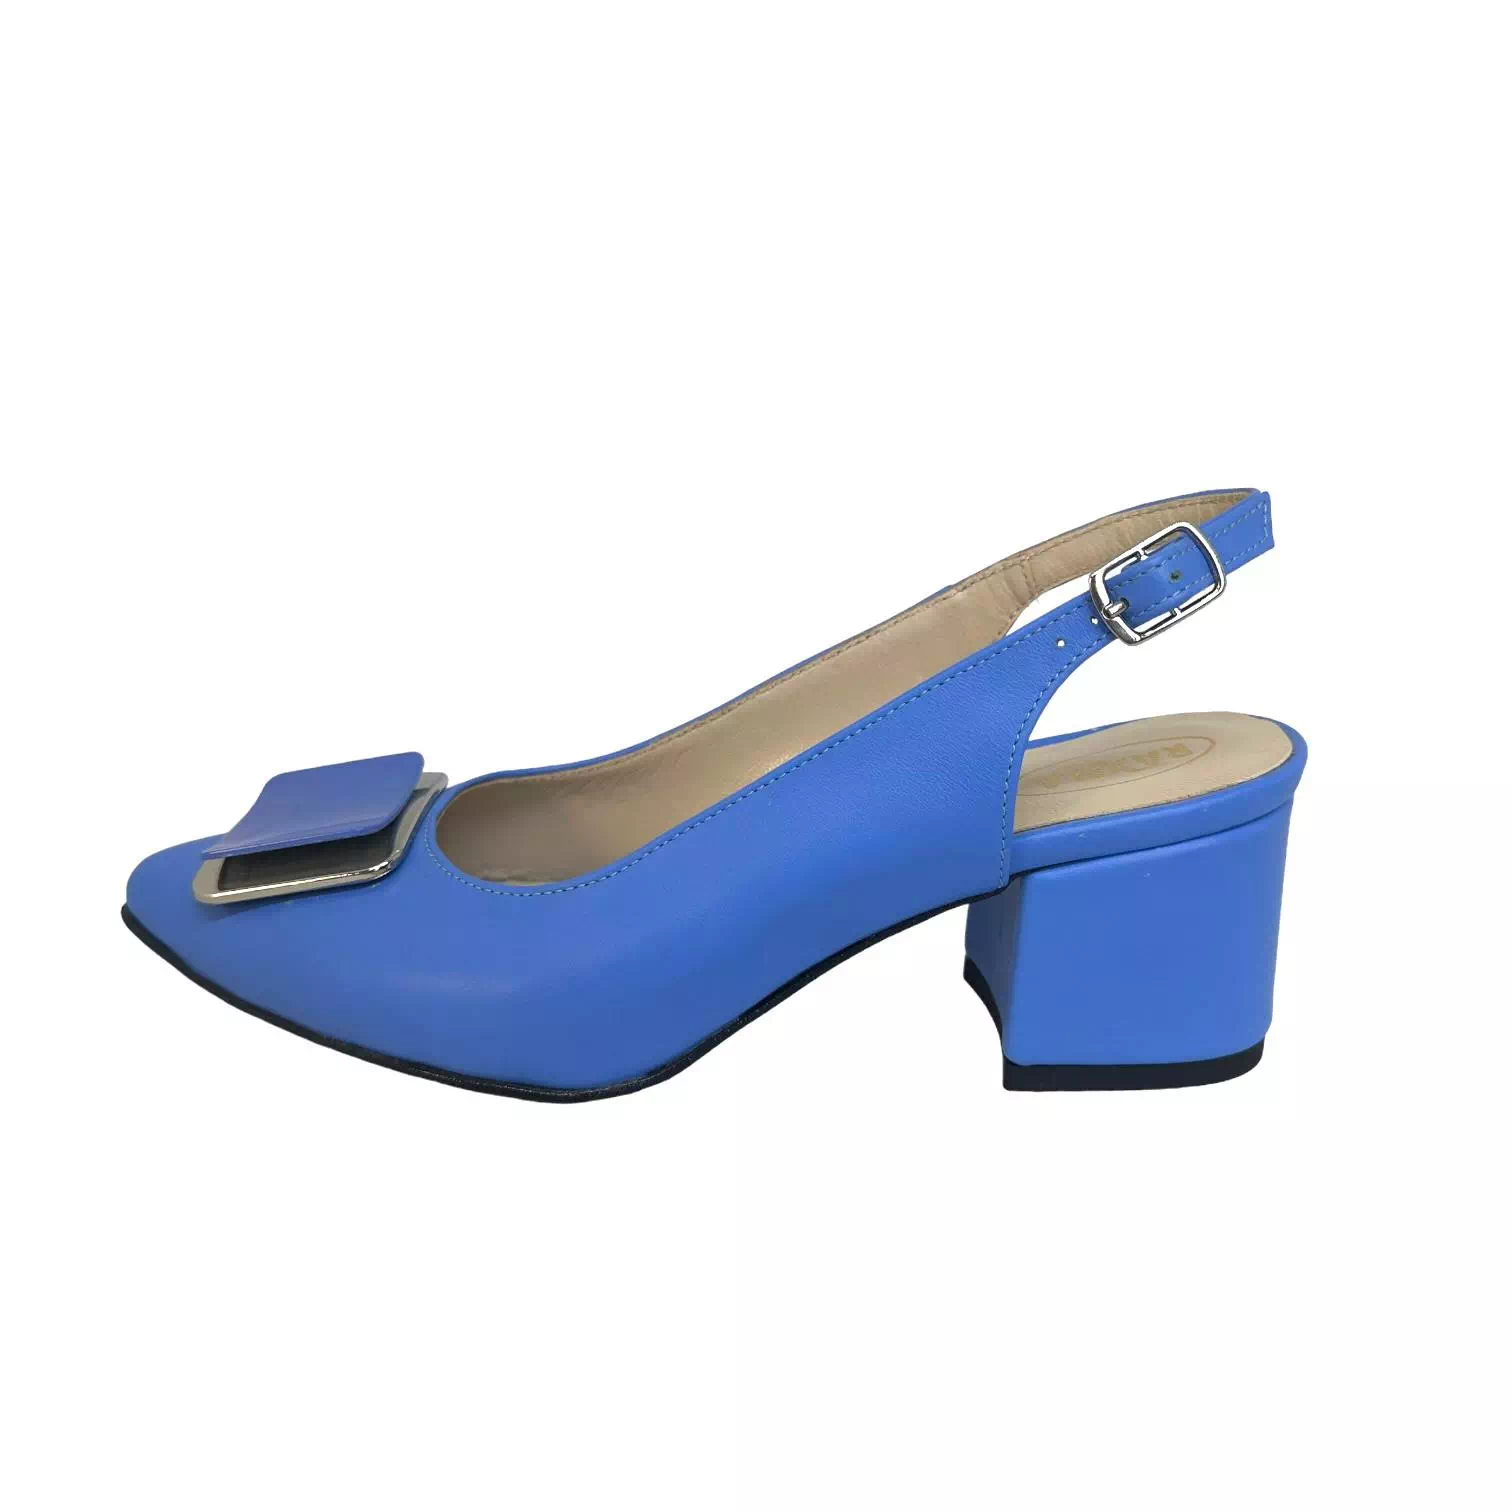 Pantofi decupati Raxela albastri cu accesoriu albastru